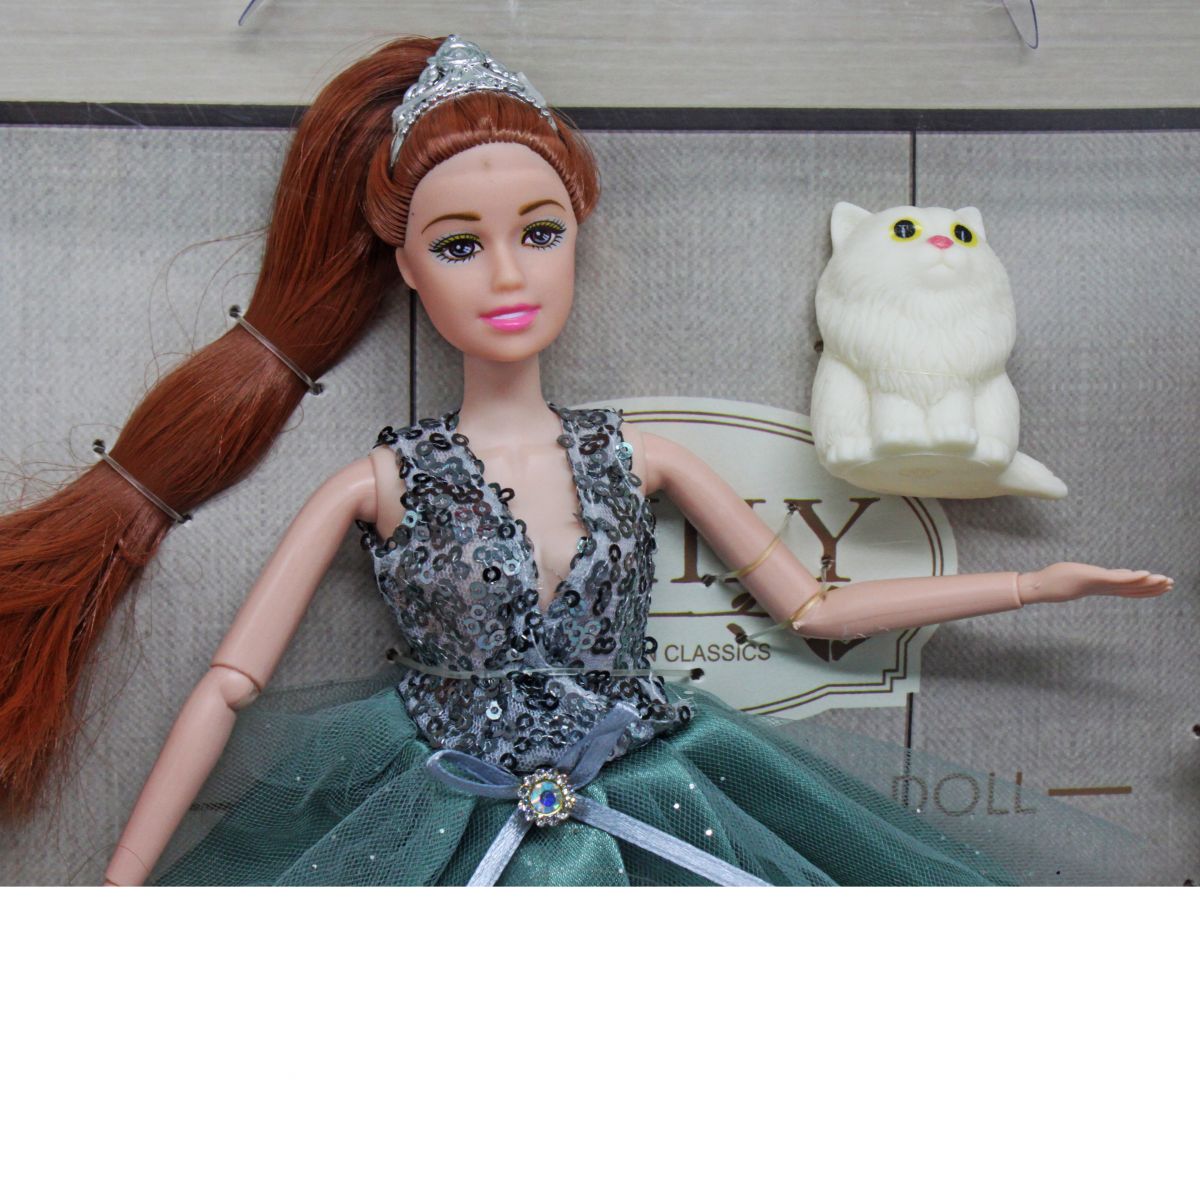 Лялька "Emily" з котиком та повітряними кульками